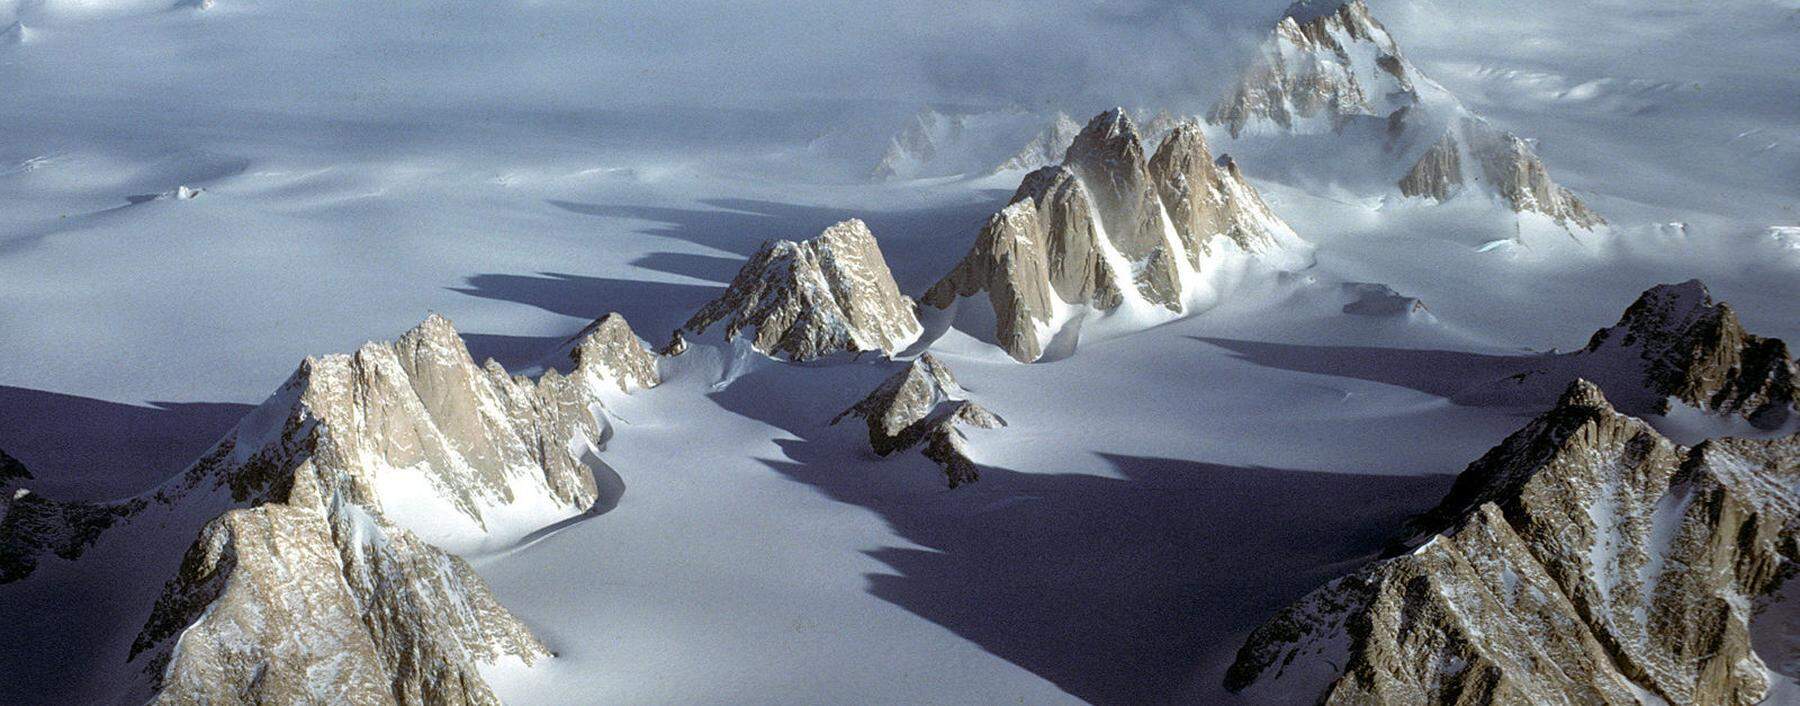 Abenteuerlich: Britischer Bergsteiger bezwingt den Spectre nahe dem S�dpol